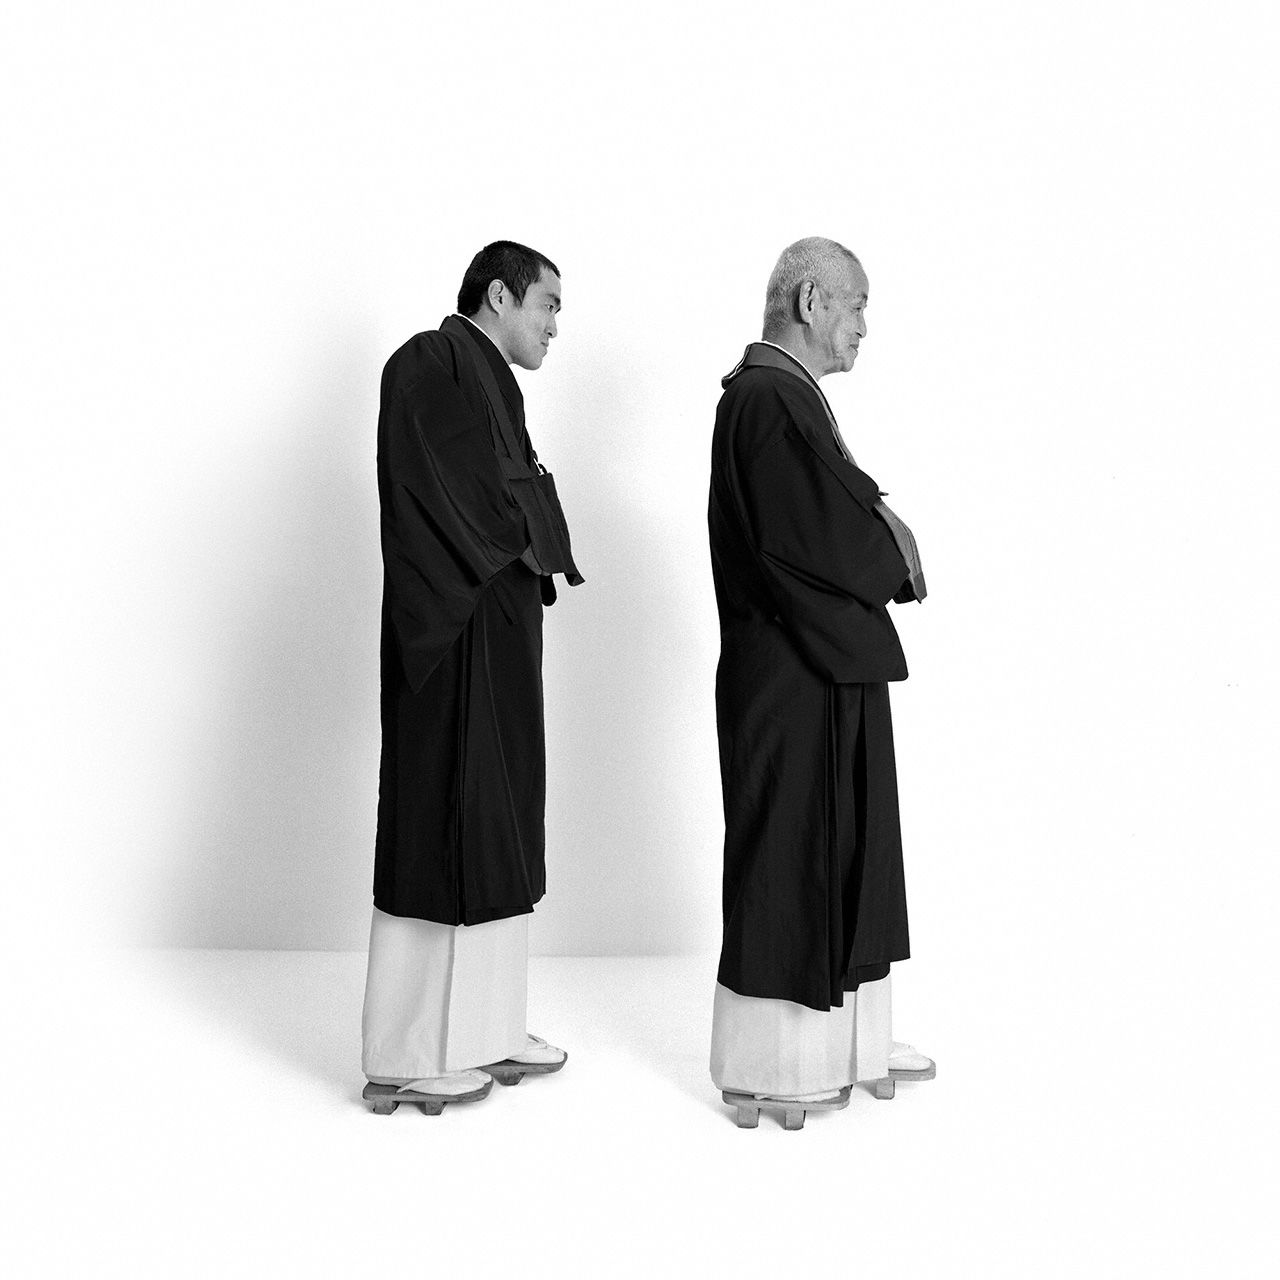 Отец: Кагэнака Тайцзюн, буддийский монах; сын: Кагэнака Акира, буддийский монах